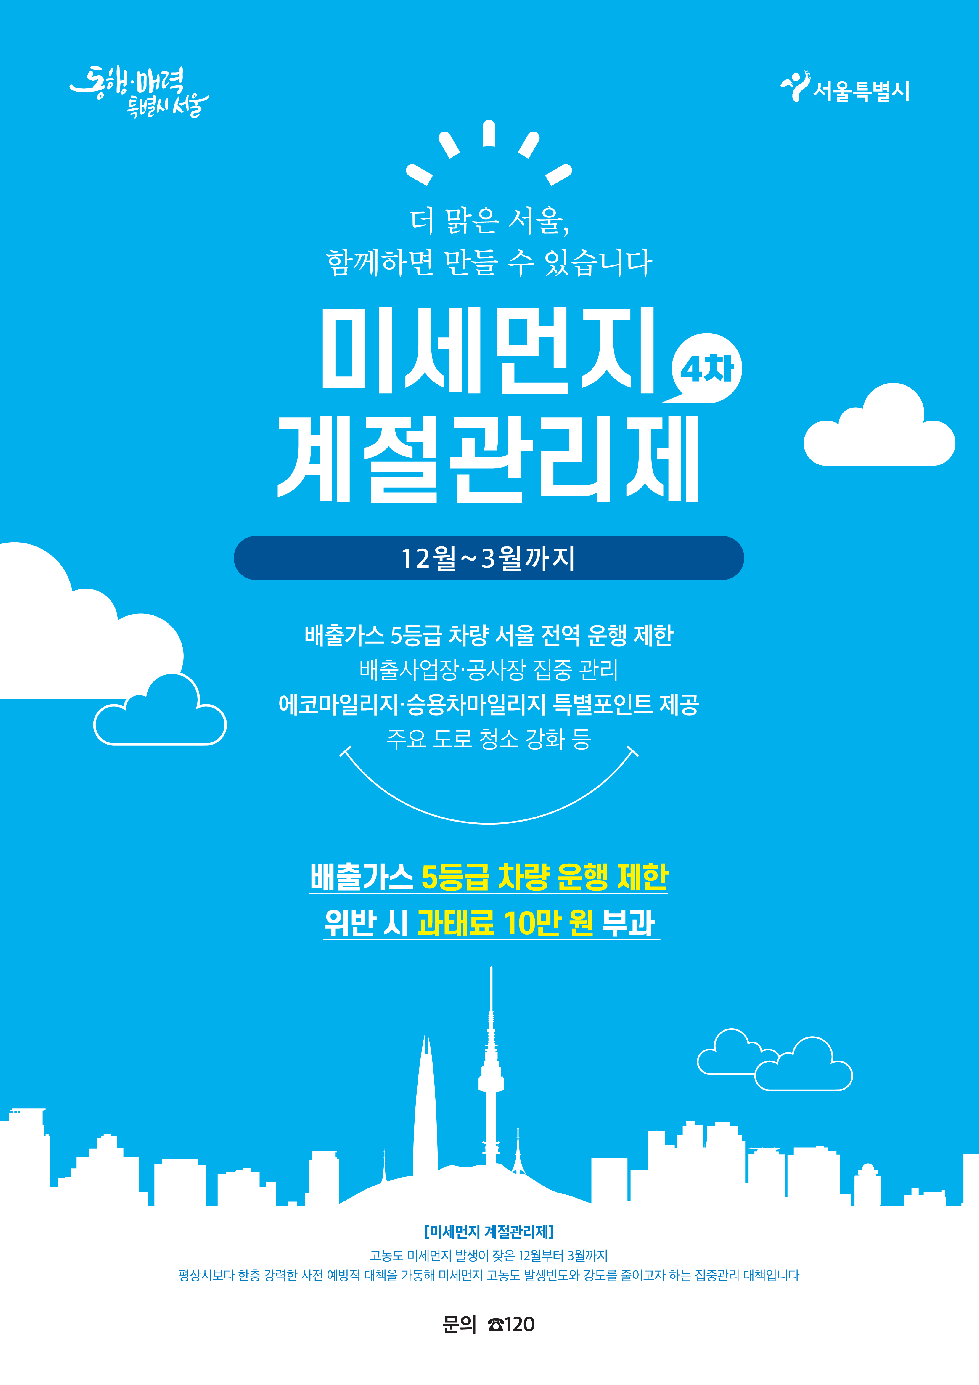 서울시, 4차 미세먼지 계절관리제 시행…4대 분야 14개 미세먼지 저감 